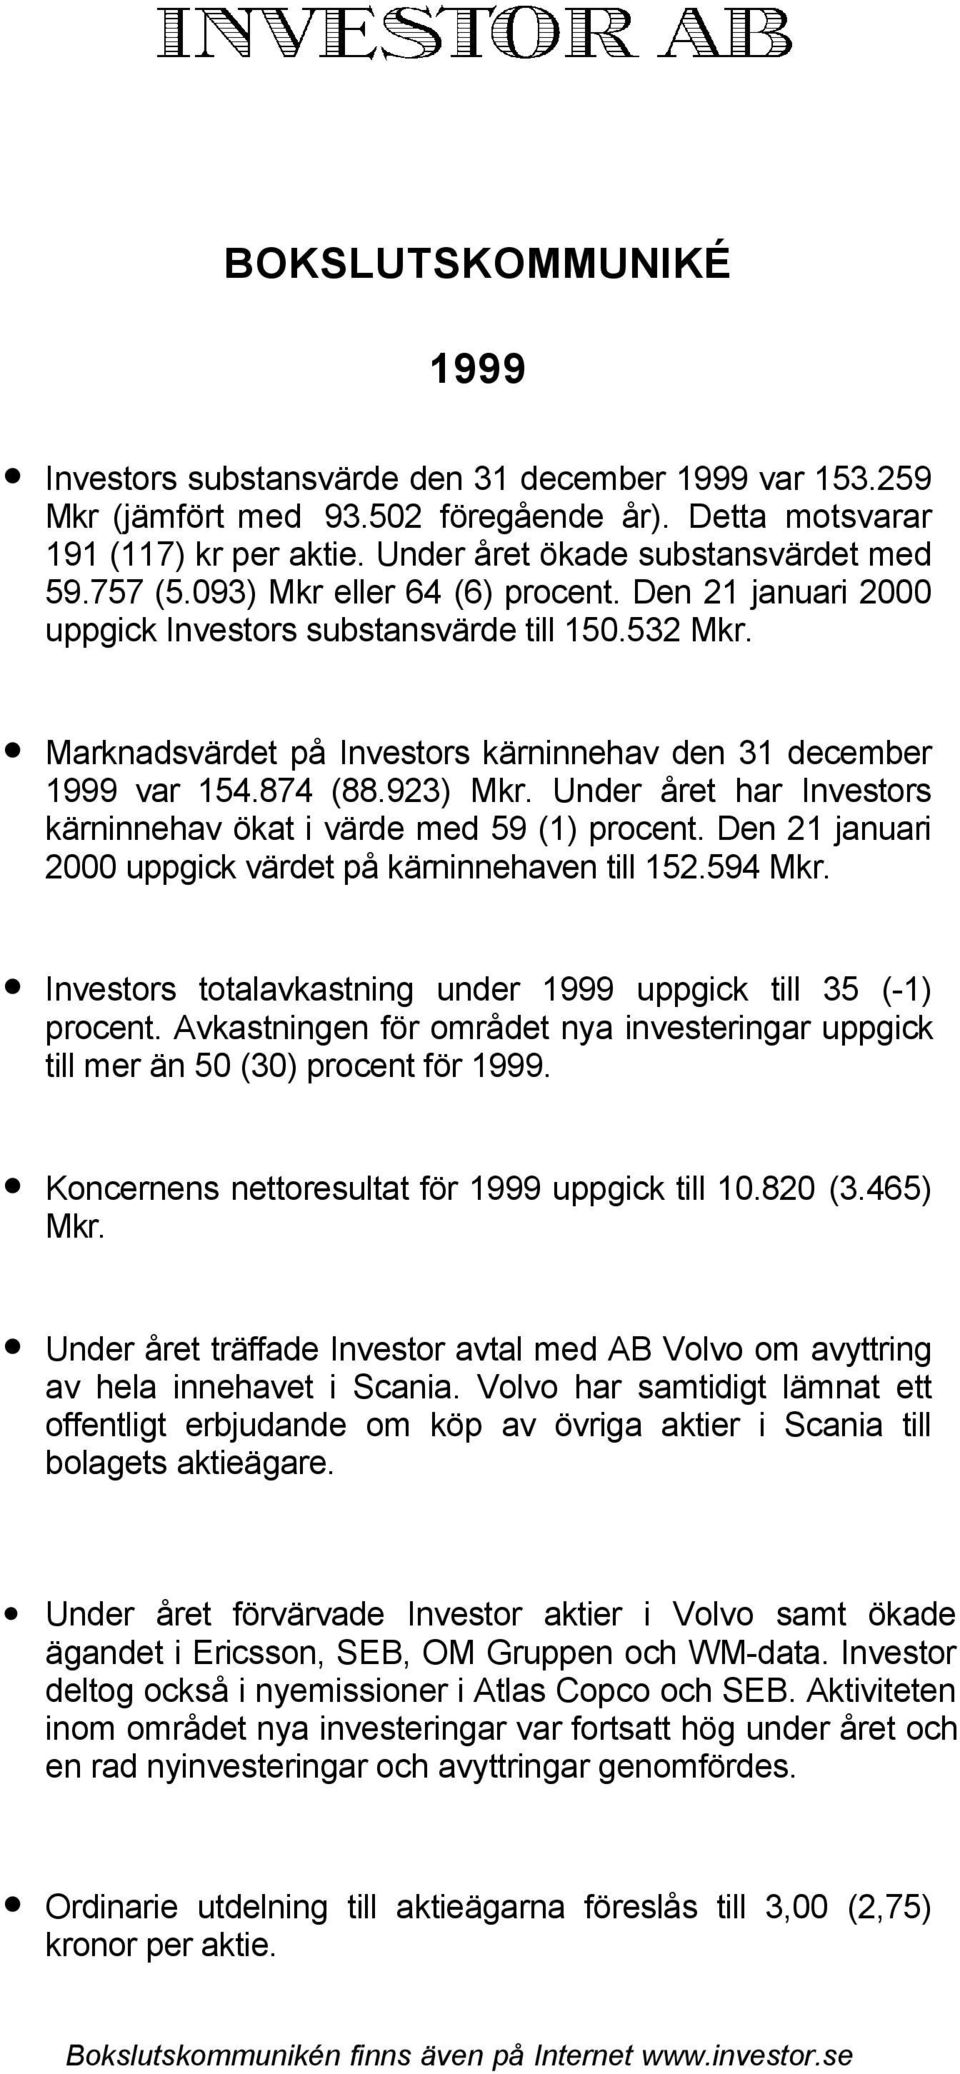 Under året har Investors kärninnehav ökat i värde med 59 (1) procent. Den 21 januari 2000 uppgick värdet på kärninnehaven till 152.594 Mkr.